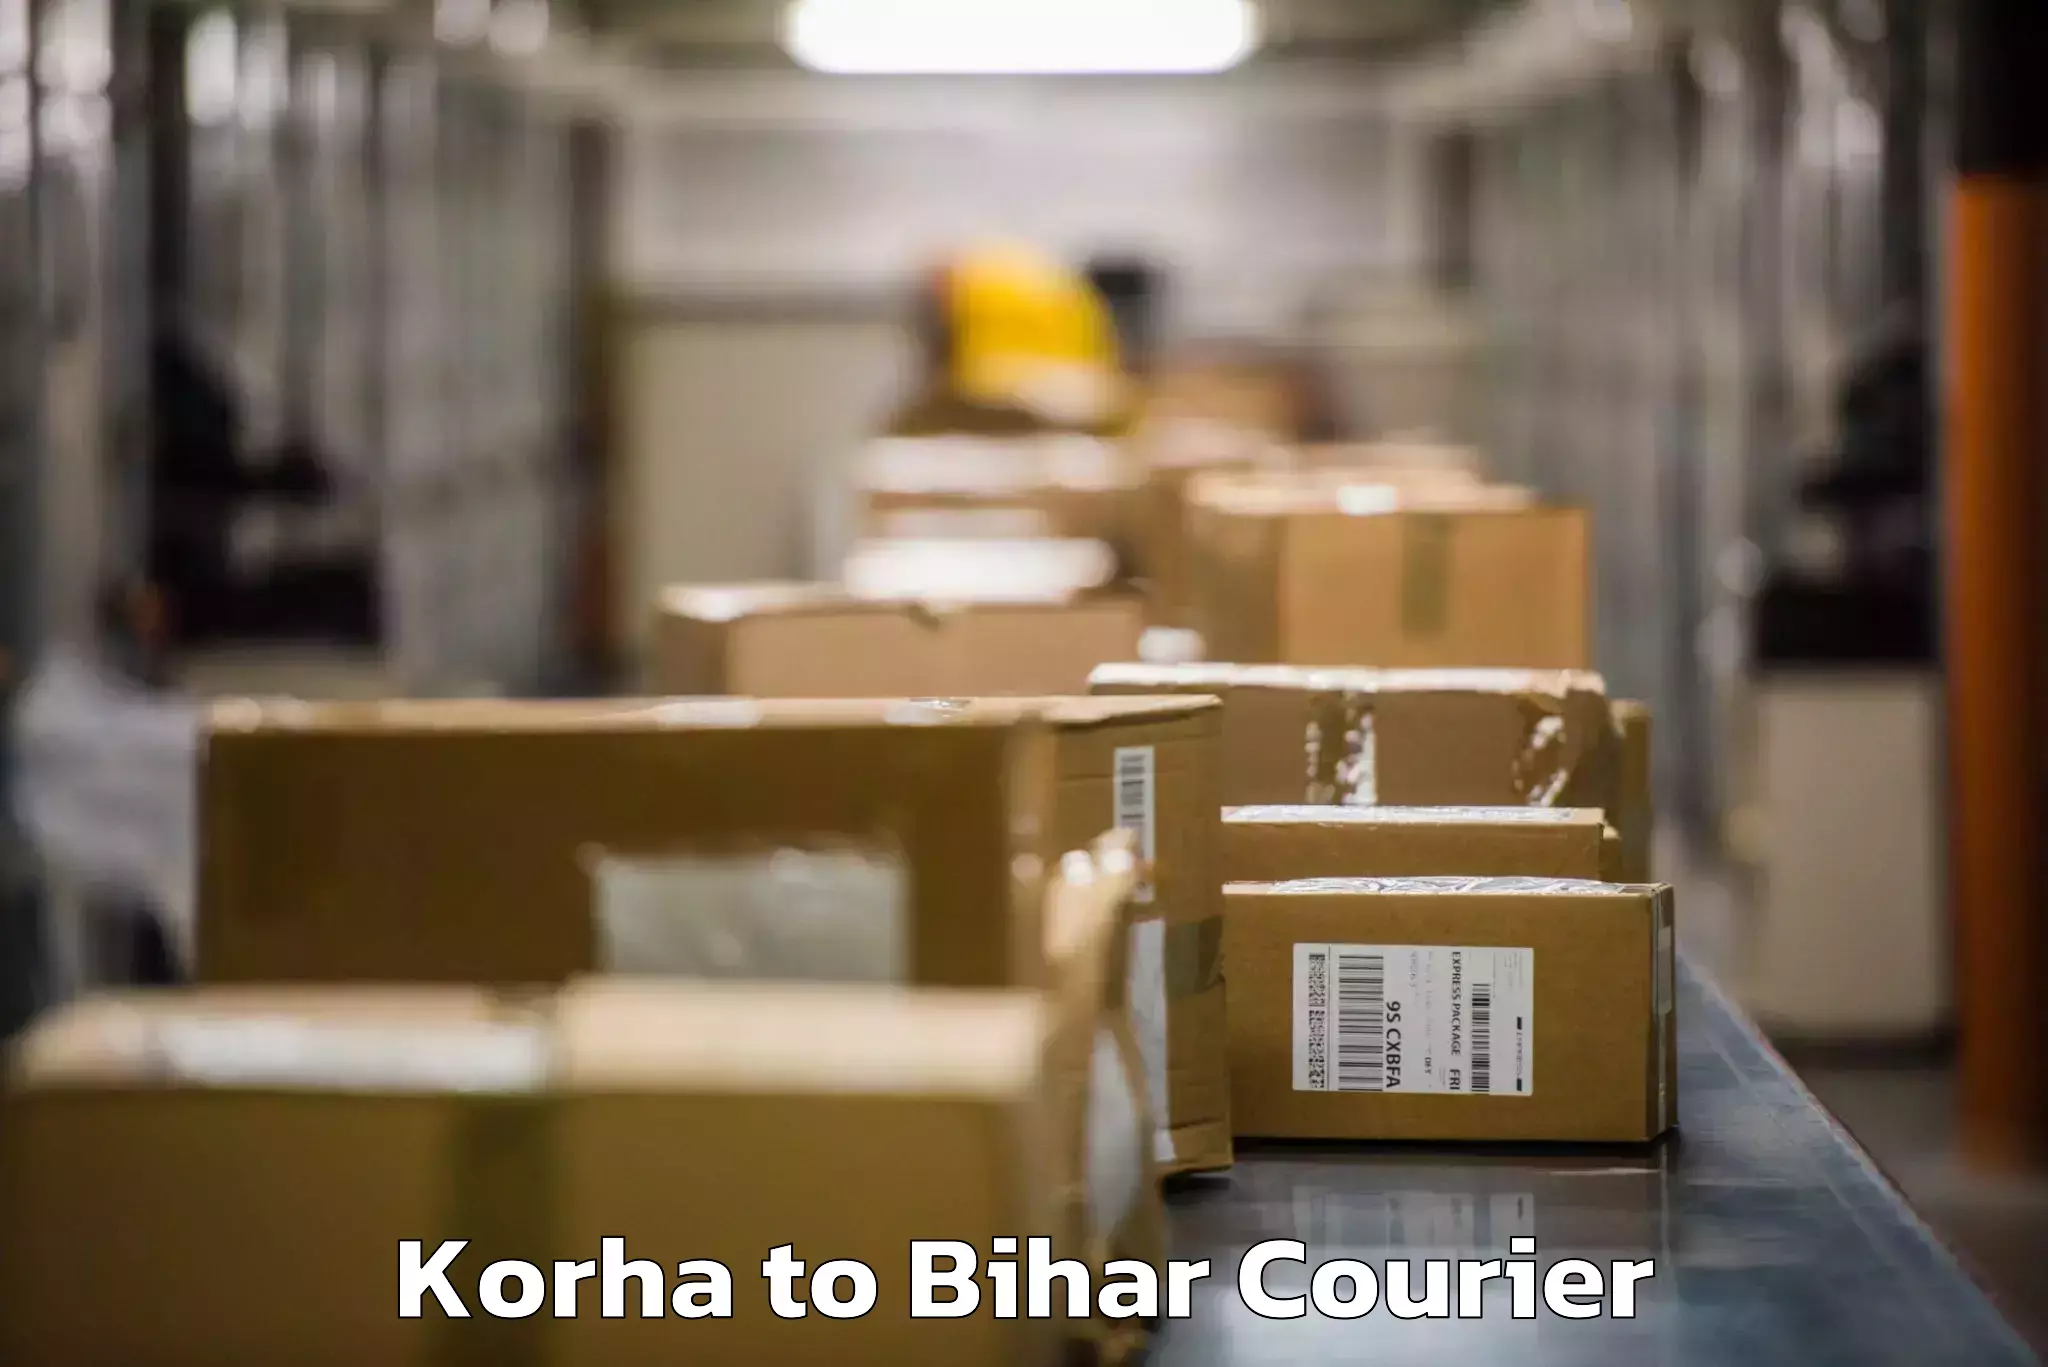 Personalized luggage shipping Korha to Aurangabad Bihar